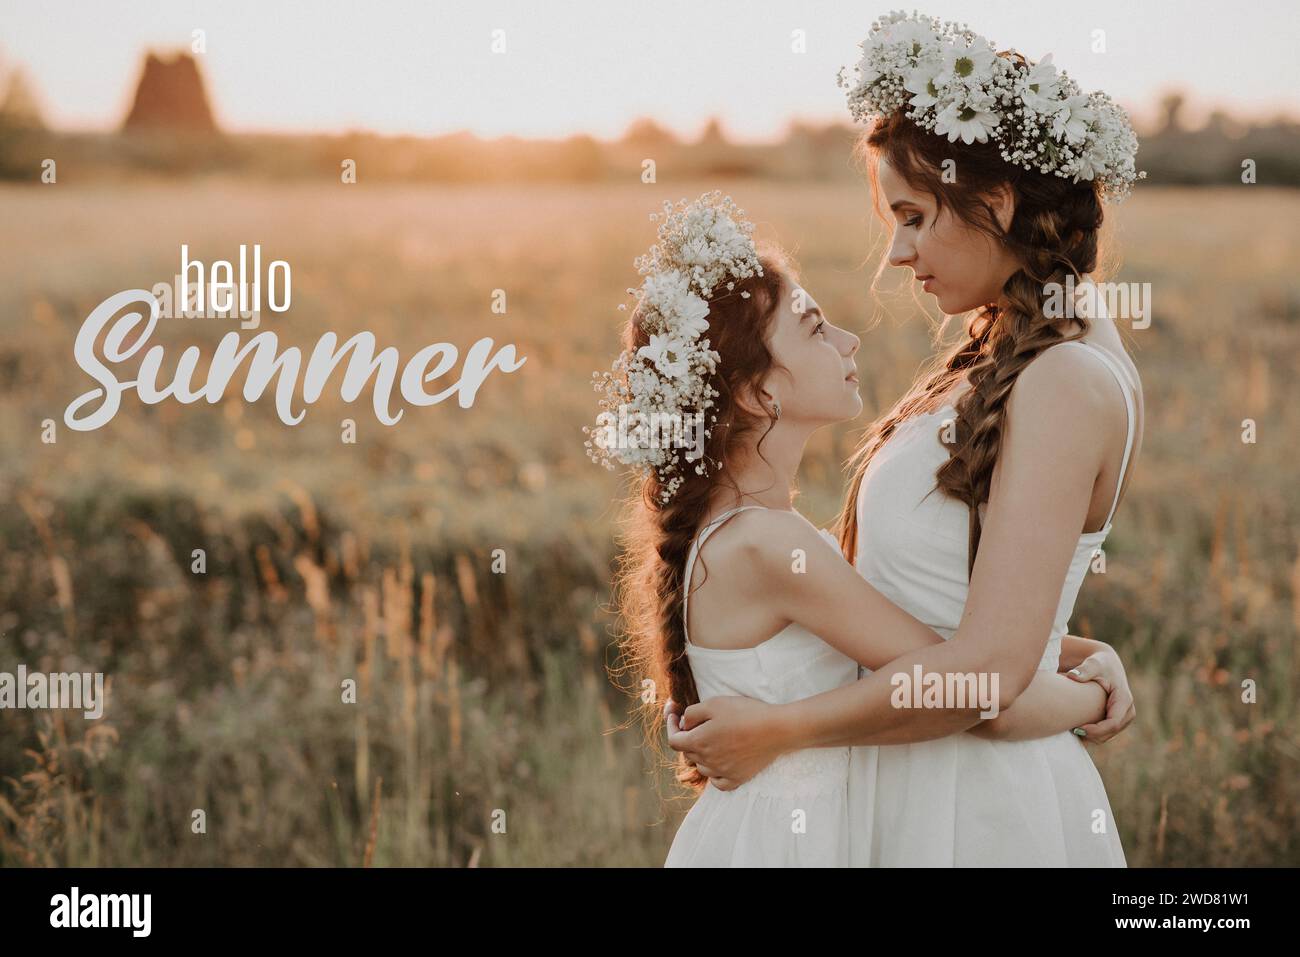 Carte de voeux avec l'inscription Hello Summer. Mère et fille heureuses avec des couronnes de fleurs dans un champ au coucher du soleil. Grain de film ajouté Banque D'Images